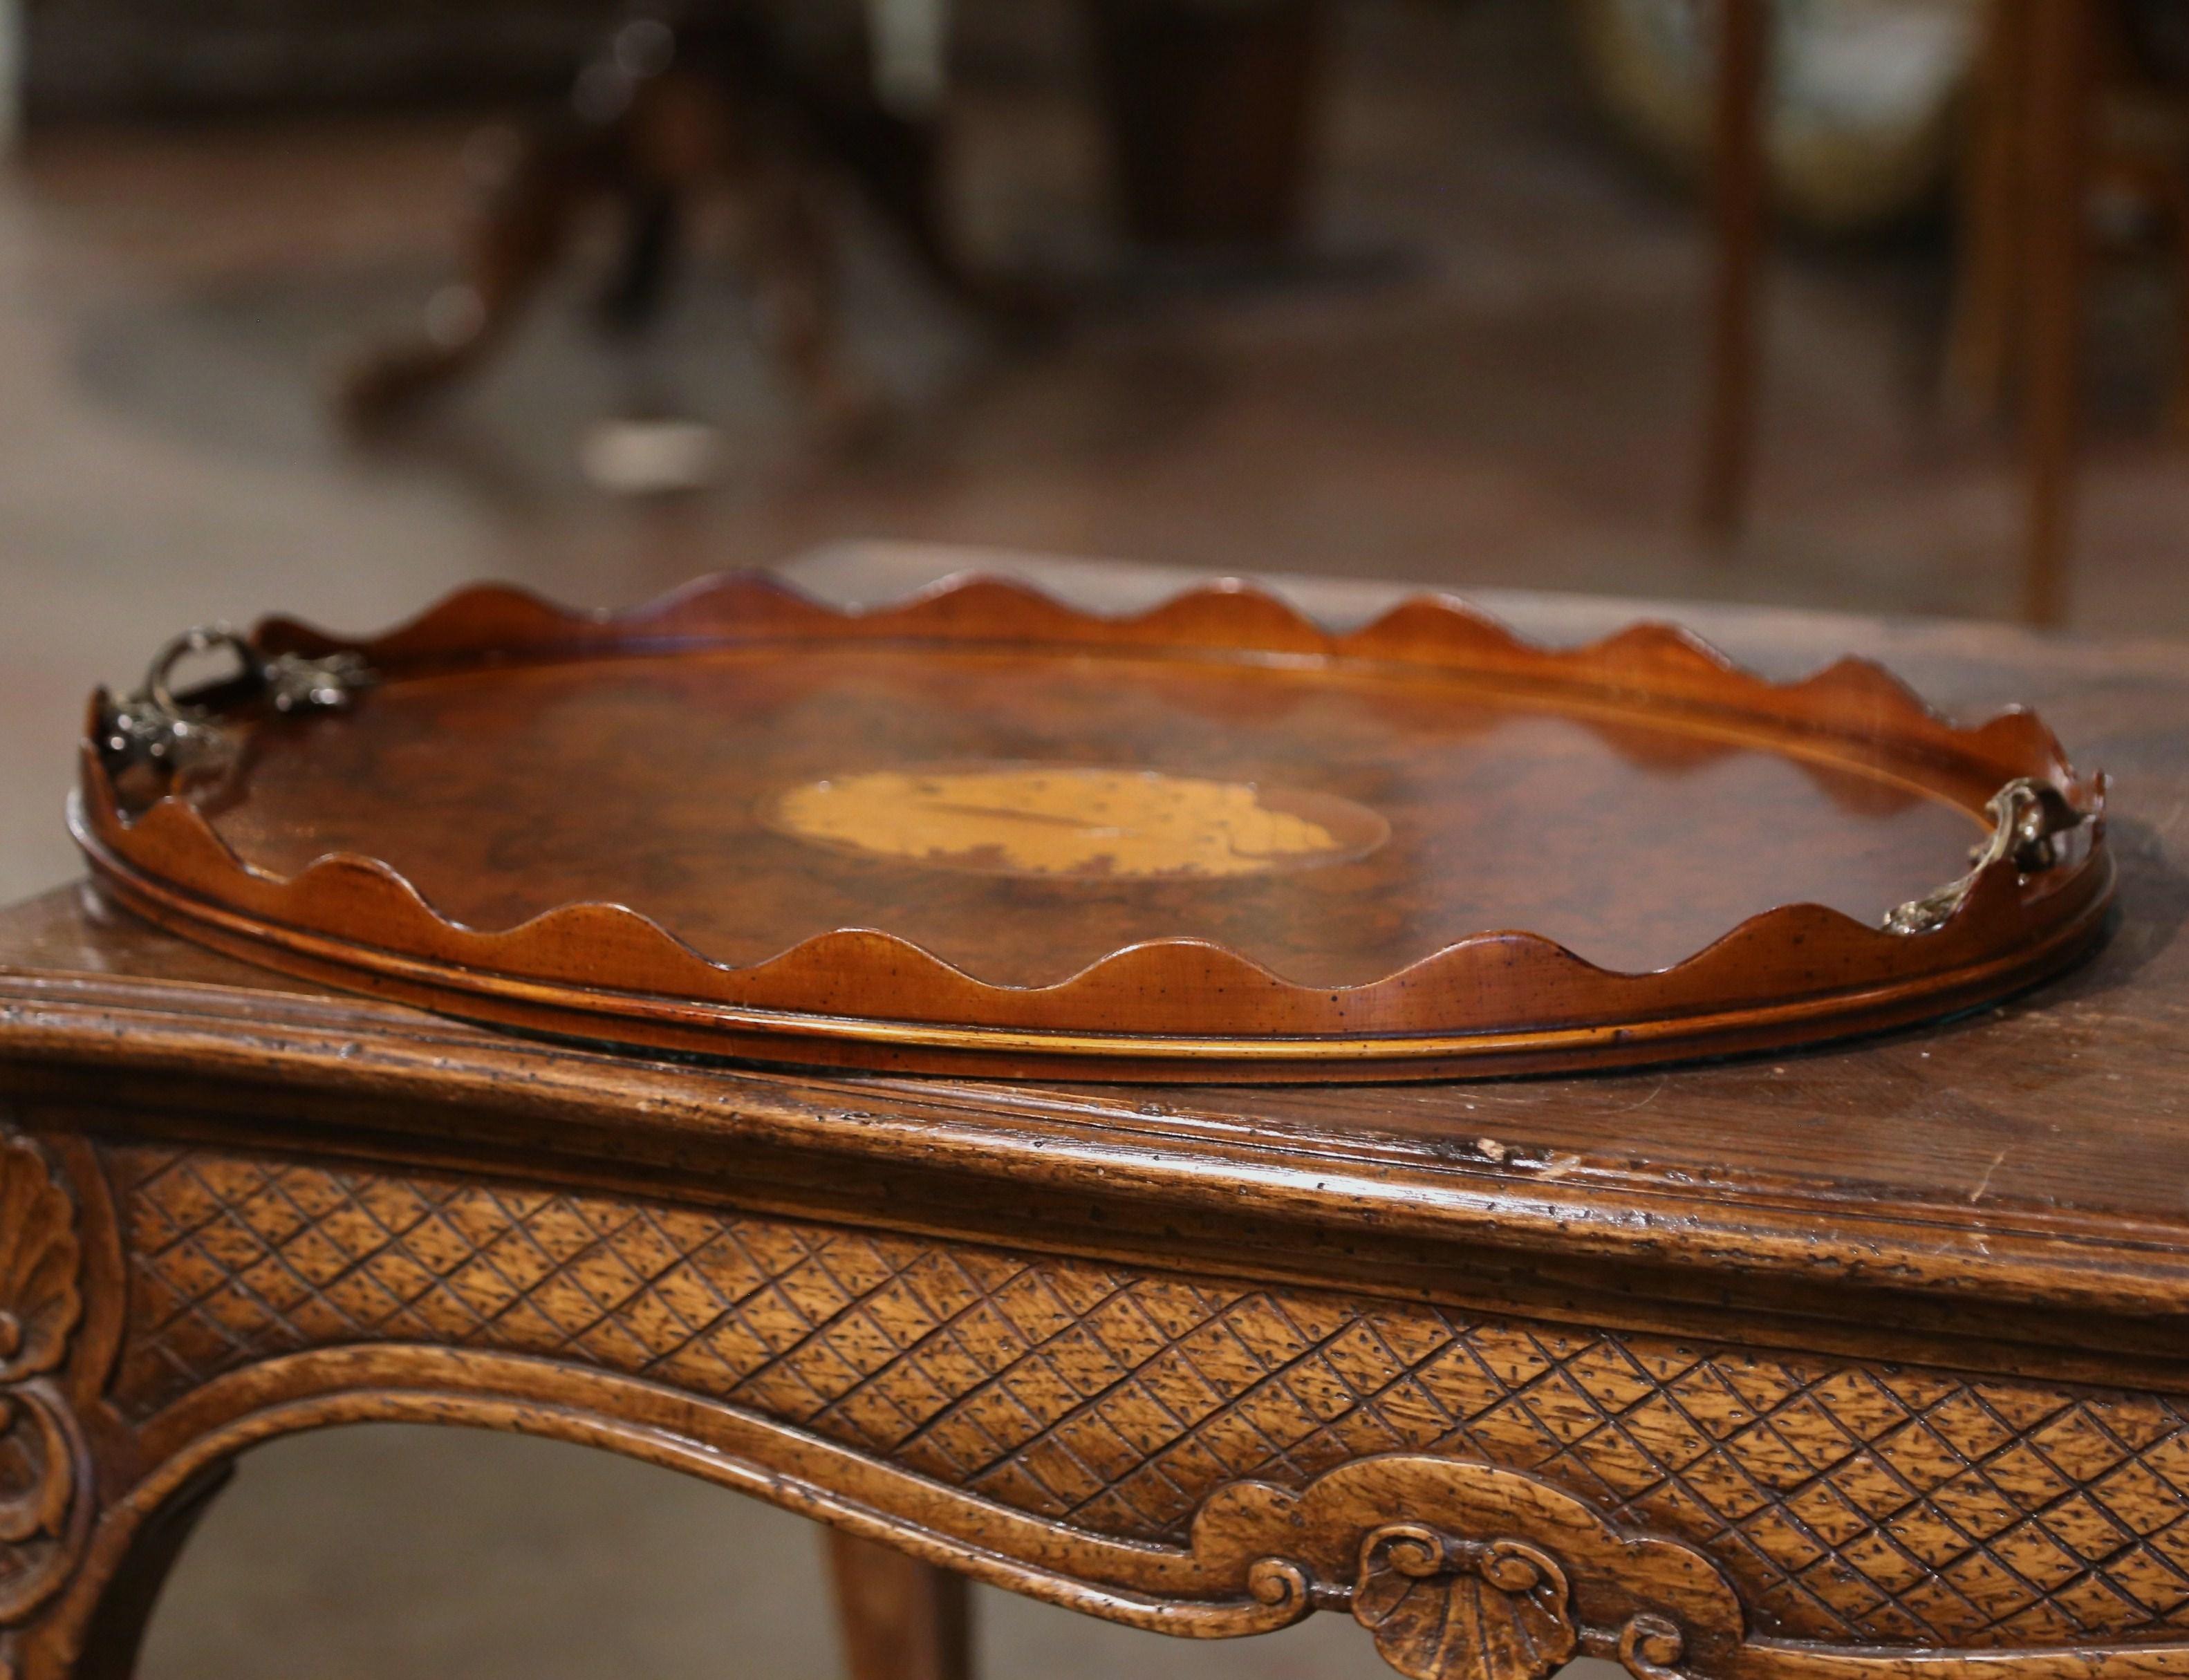 Verschönern Sie einen Couchtisch mit diesem eleganten antiken Tabletttisch. Das um 1890 in England gefertigte, ovale Plateau aus Wurzelholz weist einen erhöhten, gewellten Rand auf und ist am Ende mit zwei filigranen Bronzegriffen versehen. Die